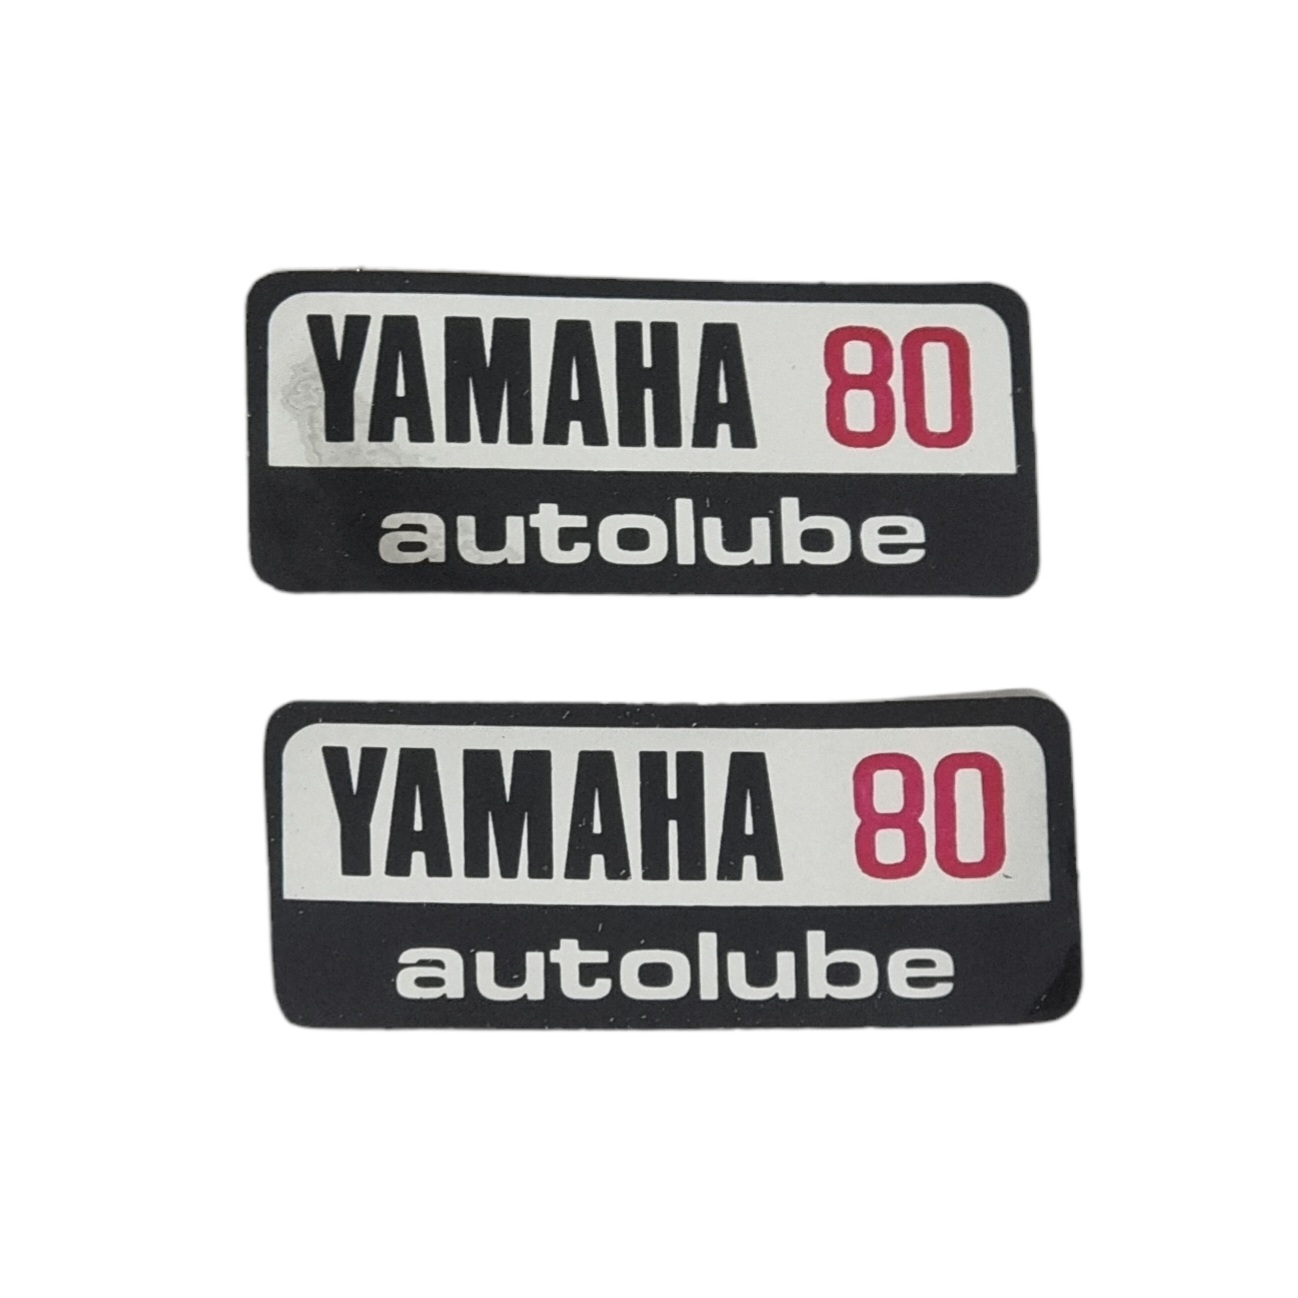 برچسب موتورسیکلت مدل Autolube مناسب برای یاماها 80 مجموعه دو عددی